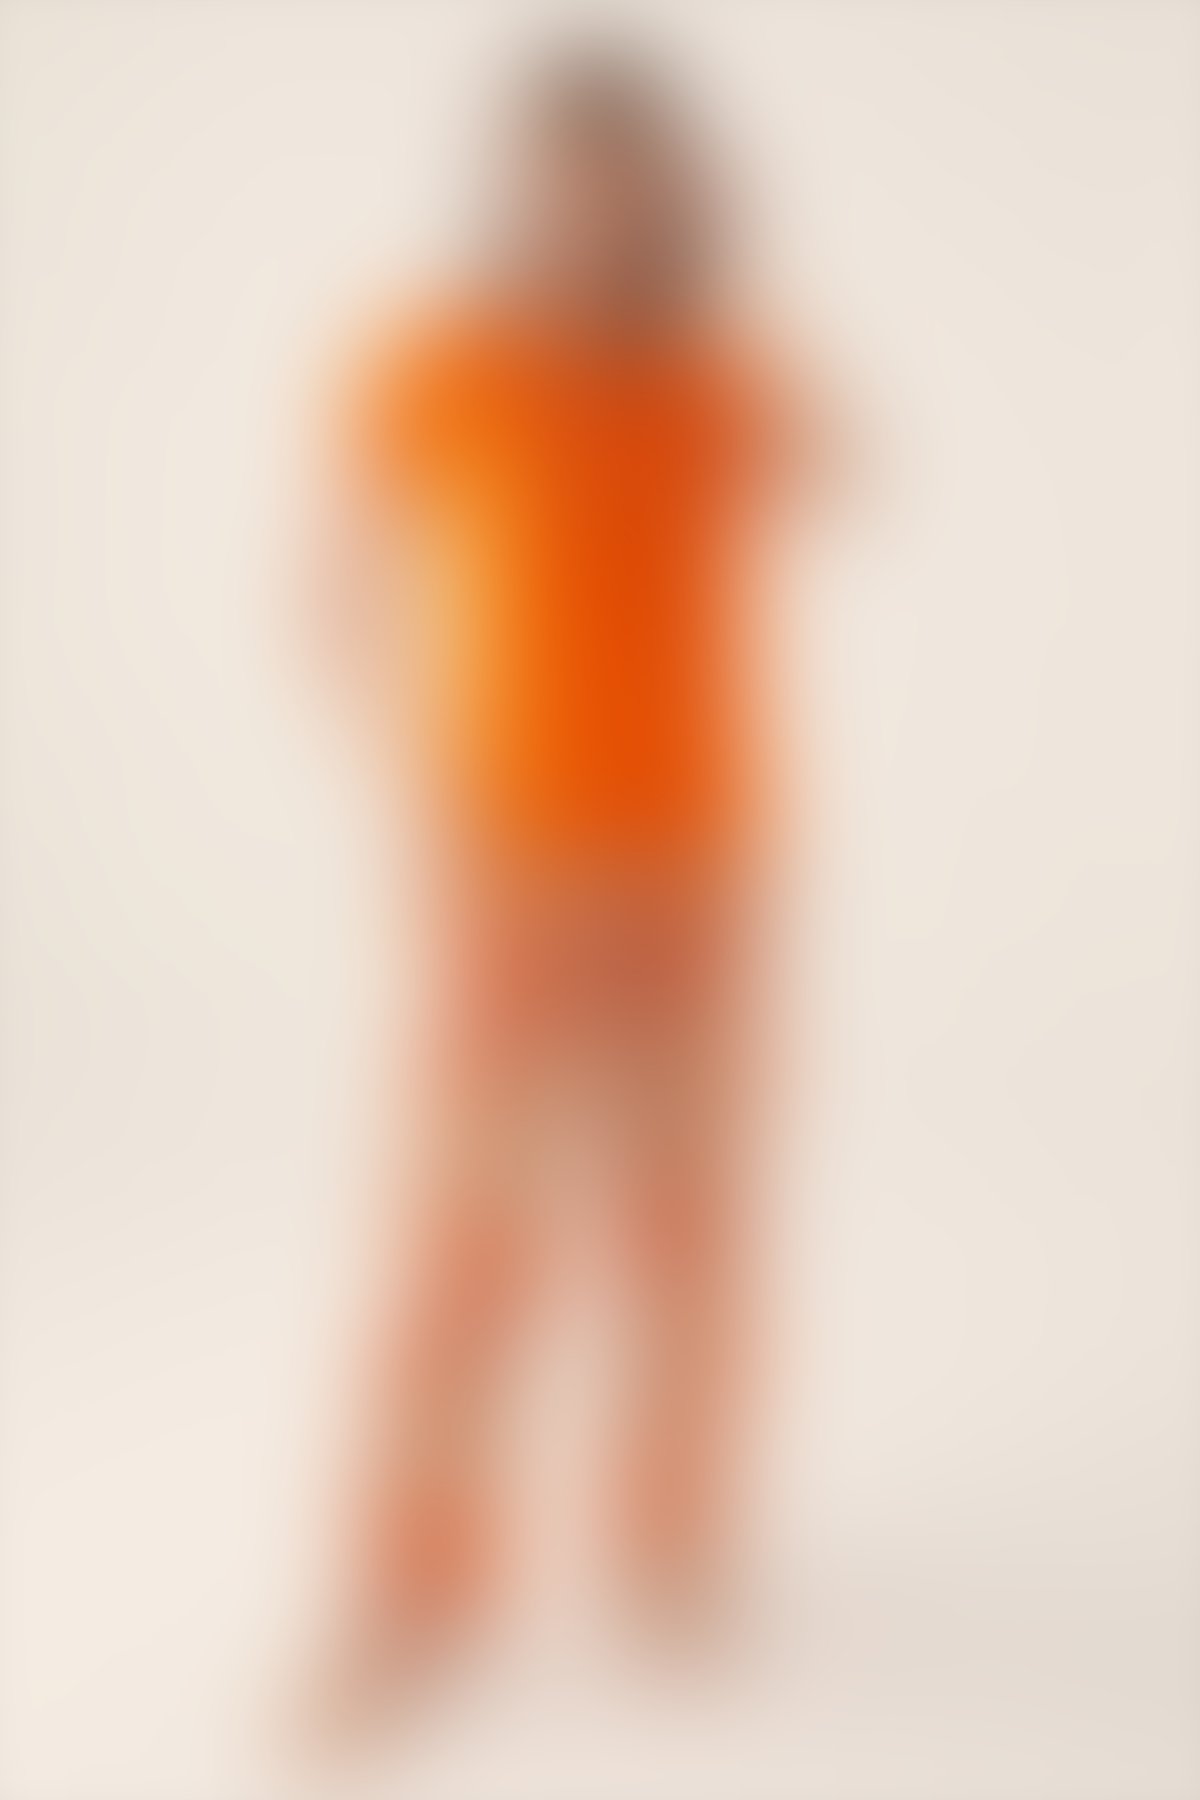 Pierre Cardin - Pierre Cardin Sirplicity Turuncu Kadın Kısa Kol Pijama Takımı